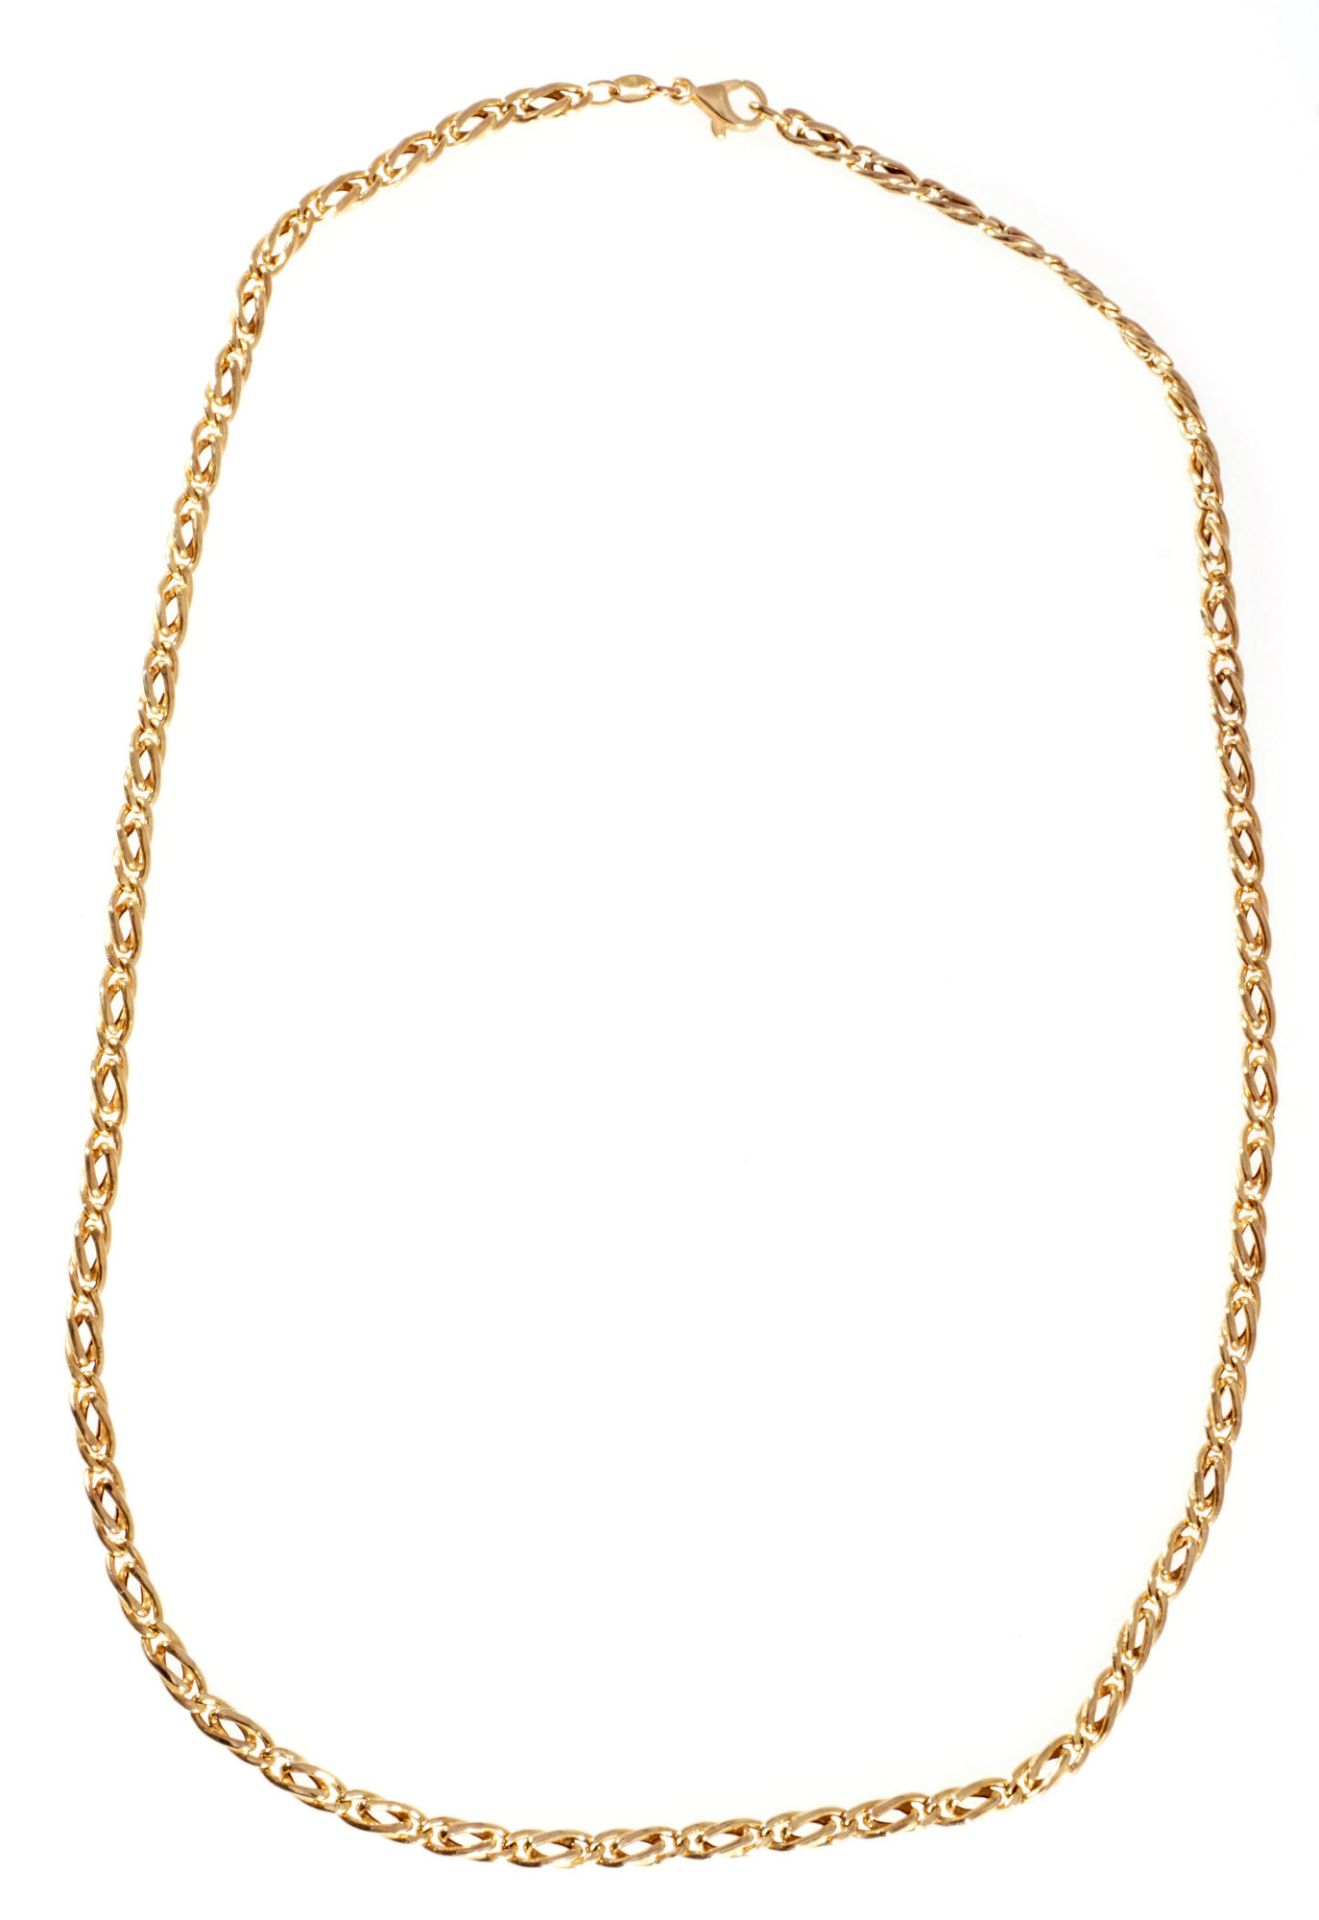 333 gold curb bracelet / necklace, 8K Gold Panzerkette / Halskette, - Image 3 of 4